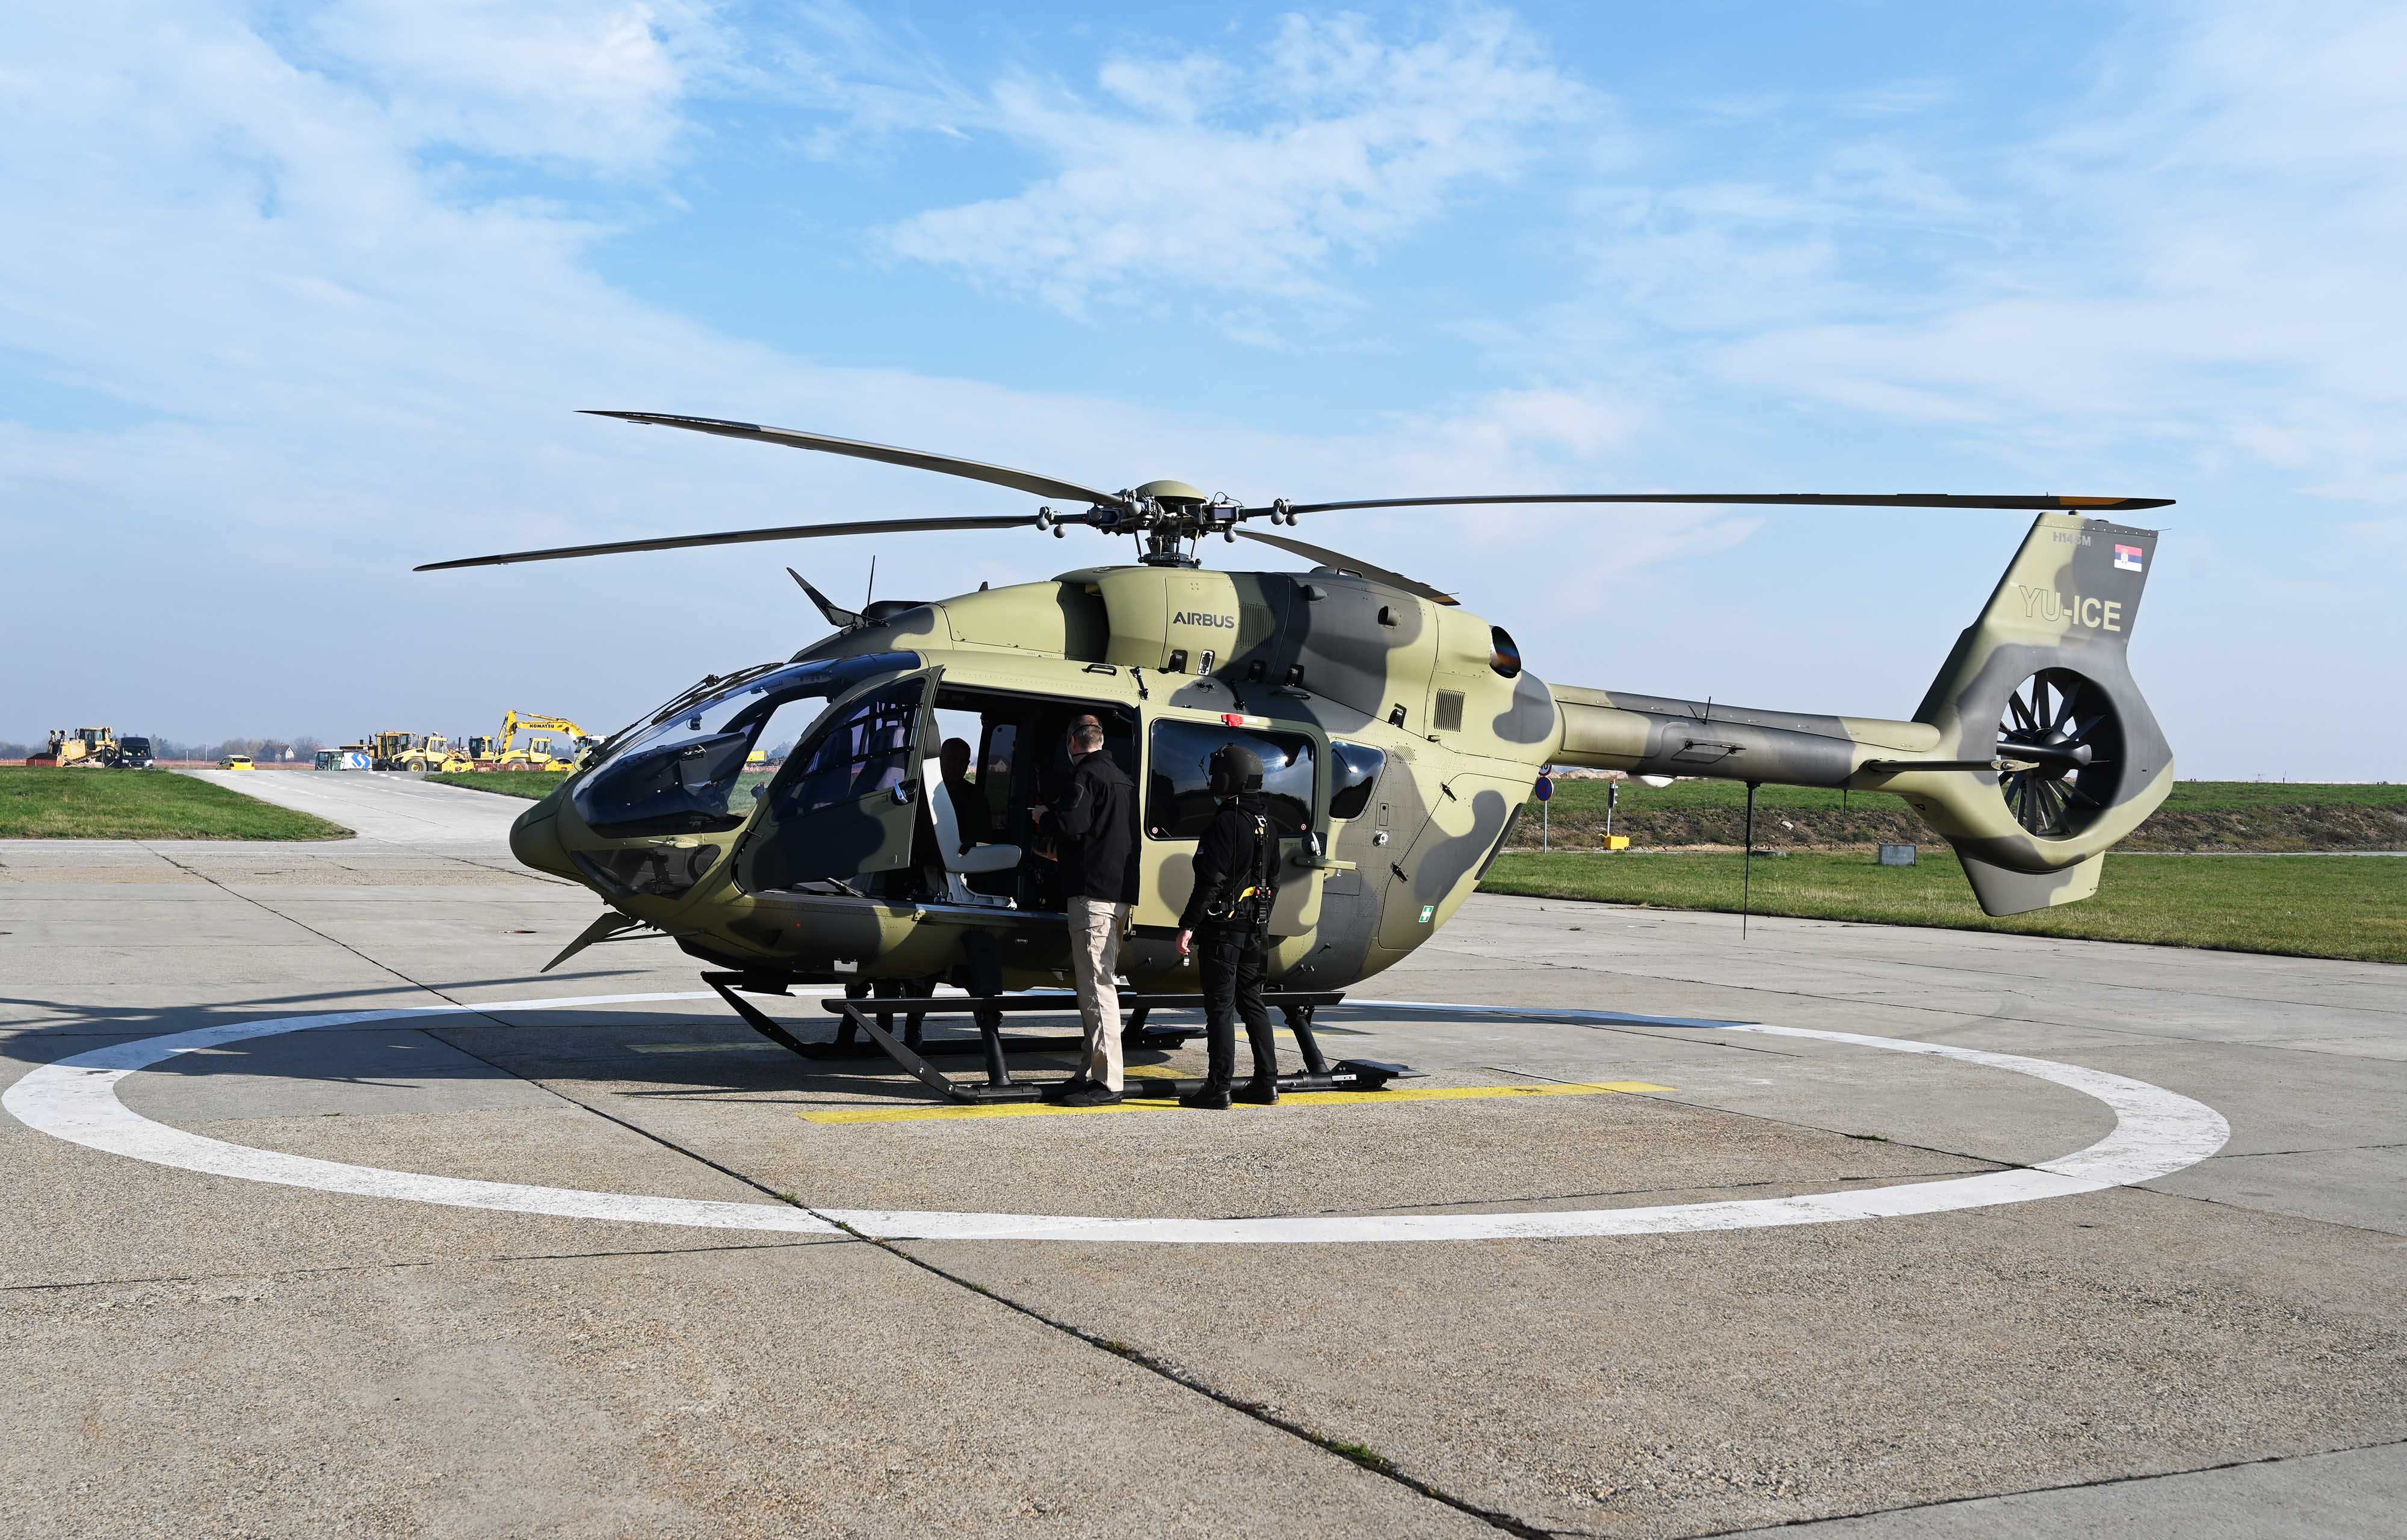   Министар унутрашњих послова Републике Србије Александар Вулин обишао  припаднике Хеликоптерске јединице МУП-а